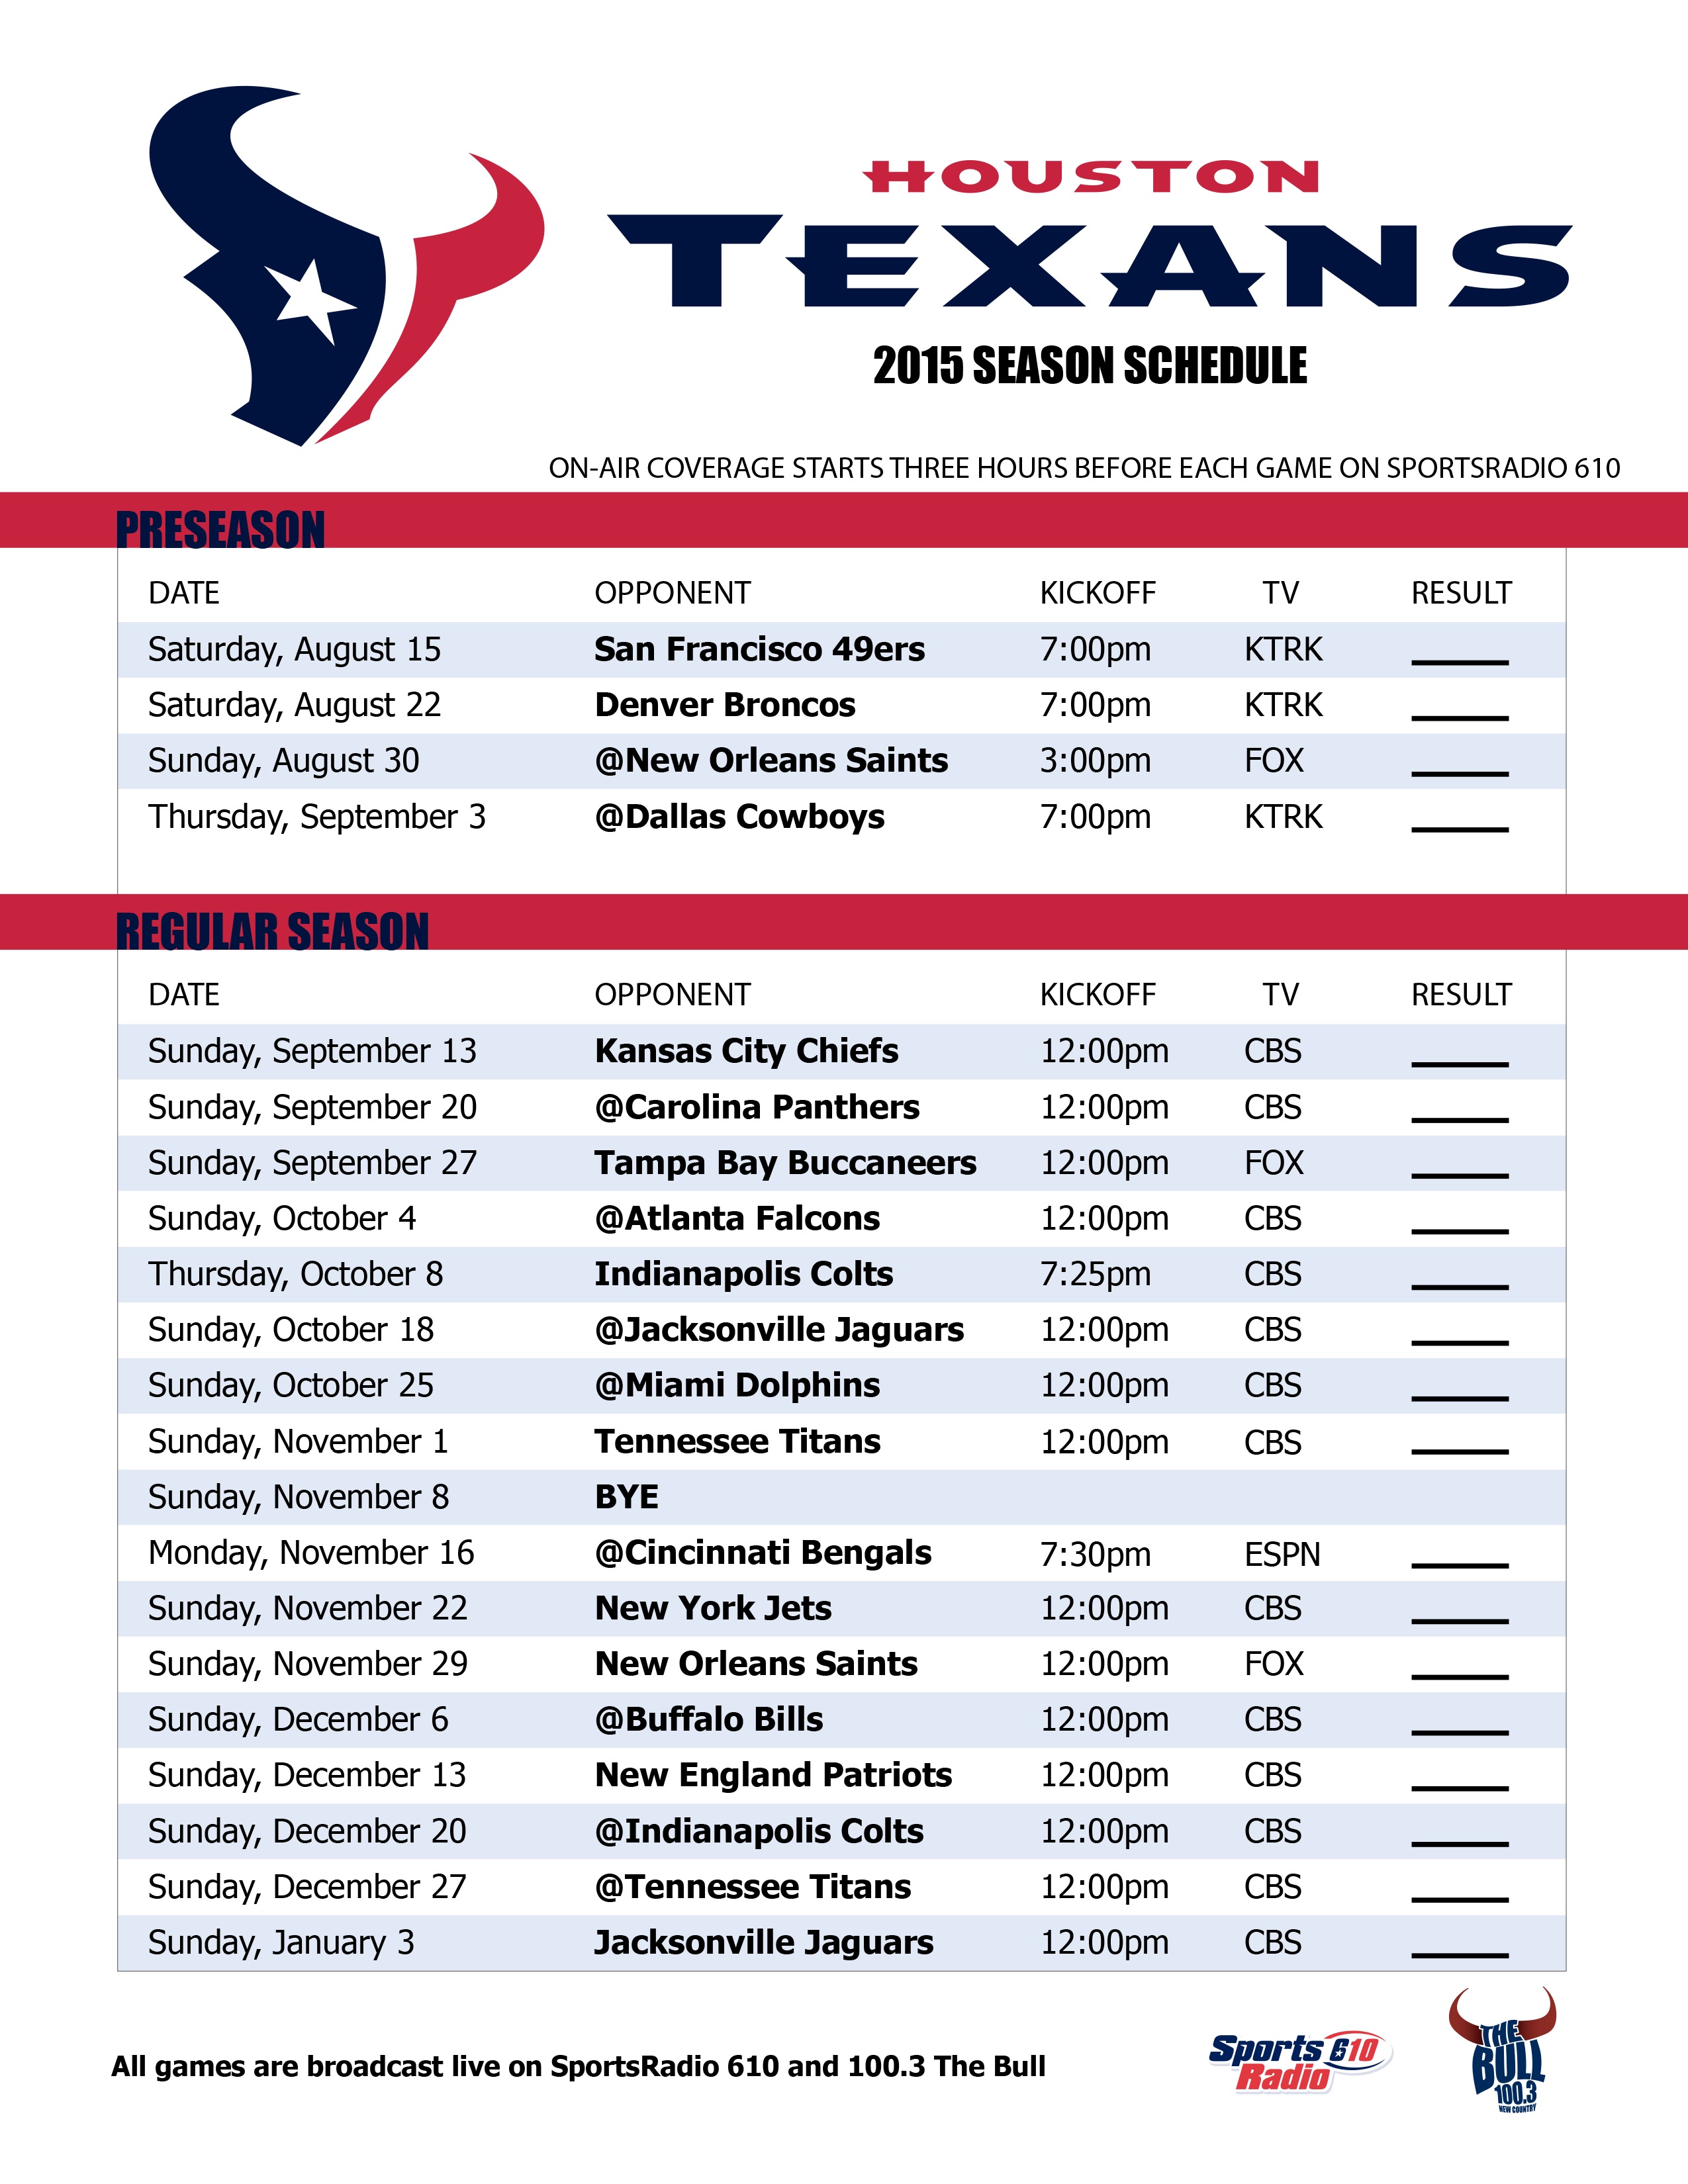 Houston Texans 2015 Schedule Wallpaper - WallpaperSafari2550 x 3300